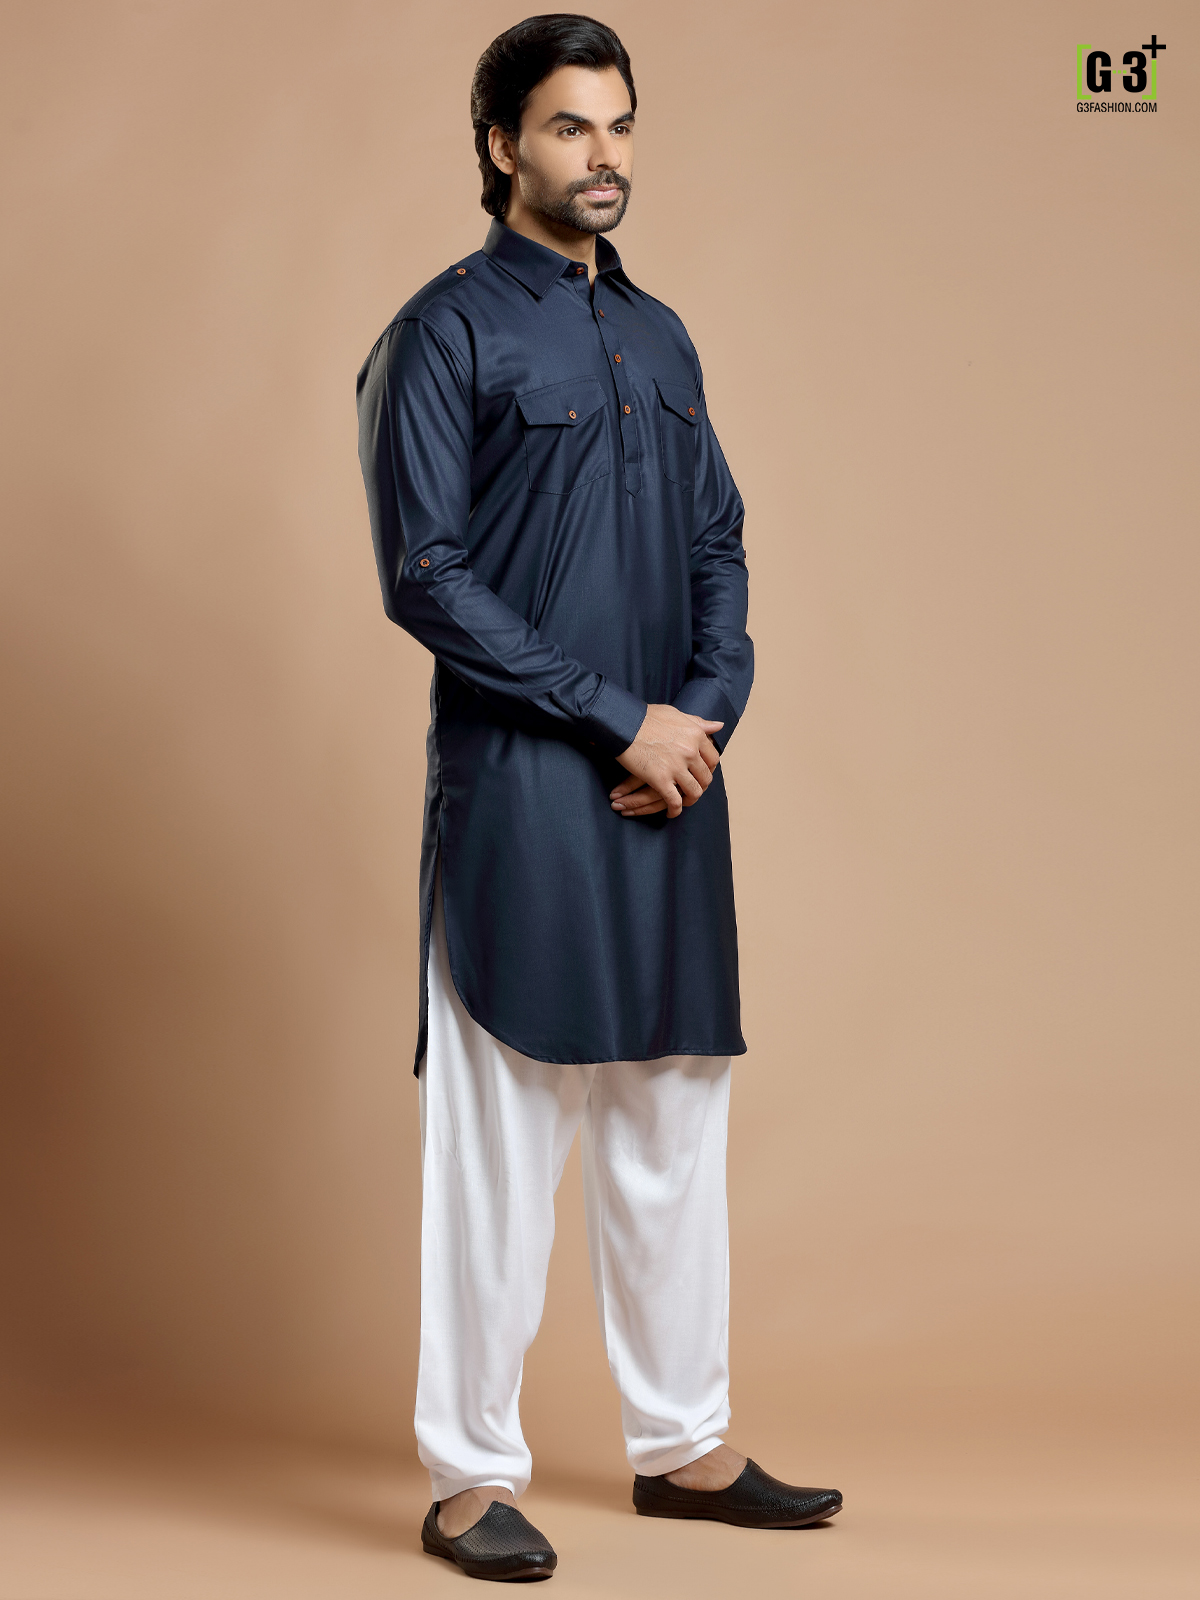 Buy KUSHANJALI DESIGNERS Cotton Pathani Salwar Suit For Men/Boys. at  Amazon.in